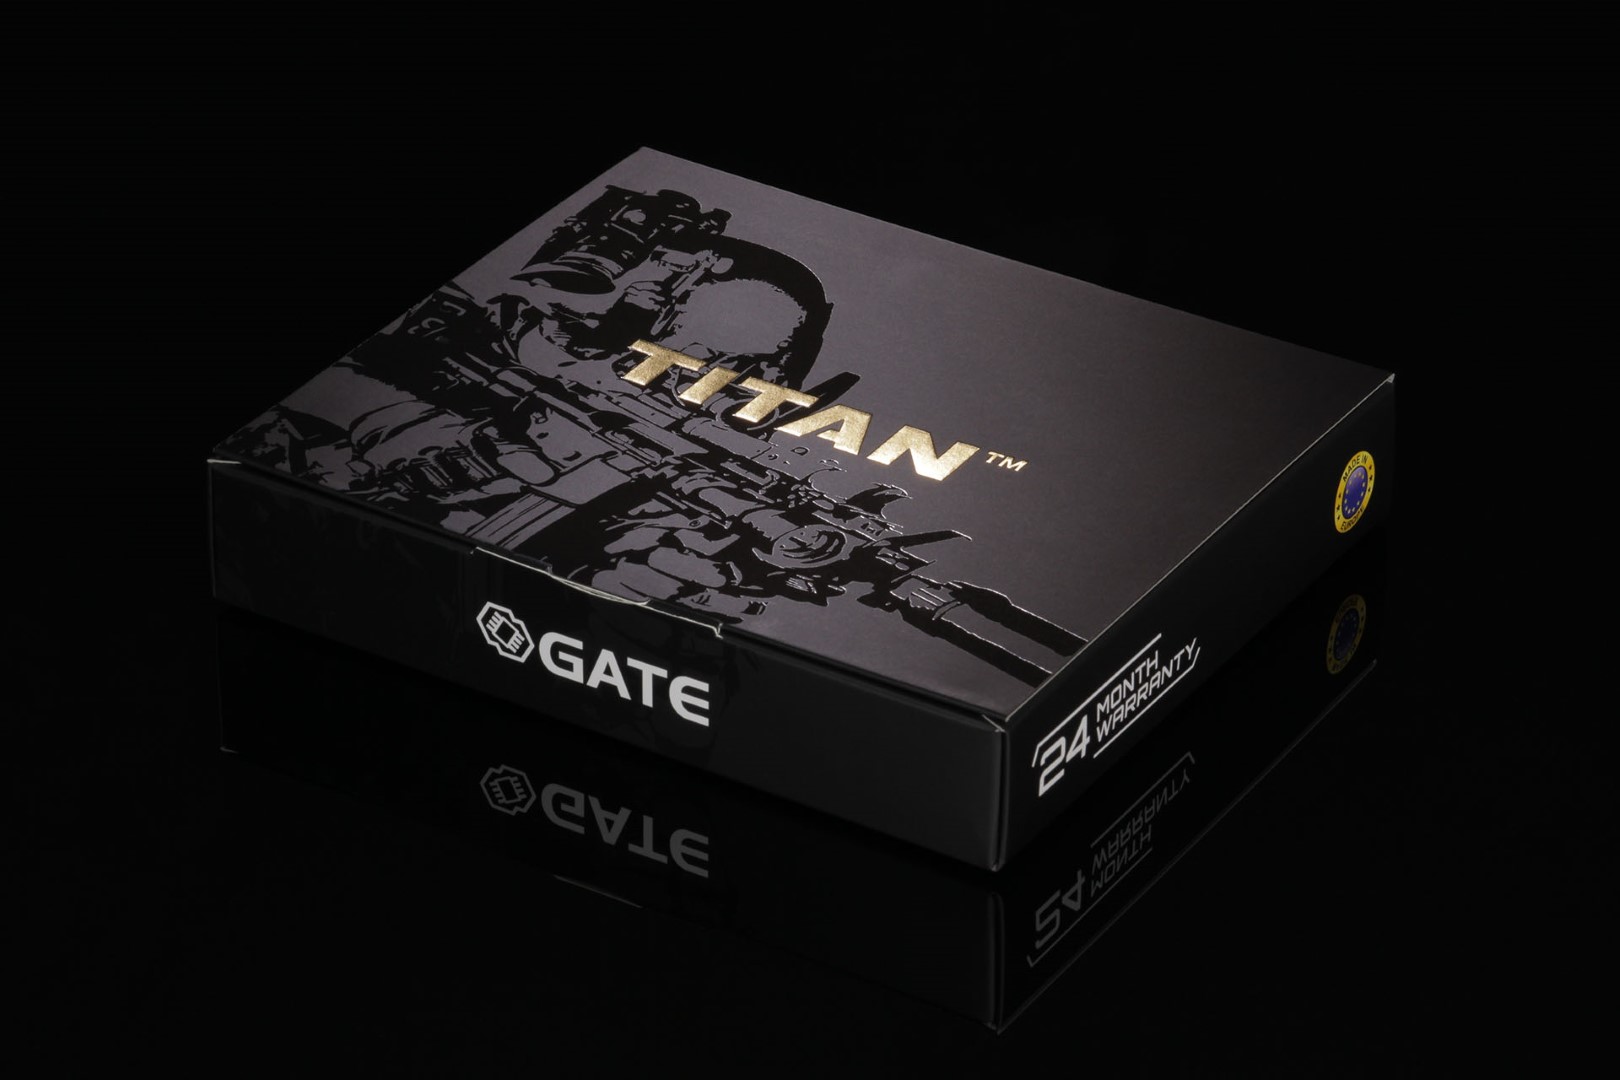 GATE TITAN V2 Advanced Set